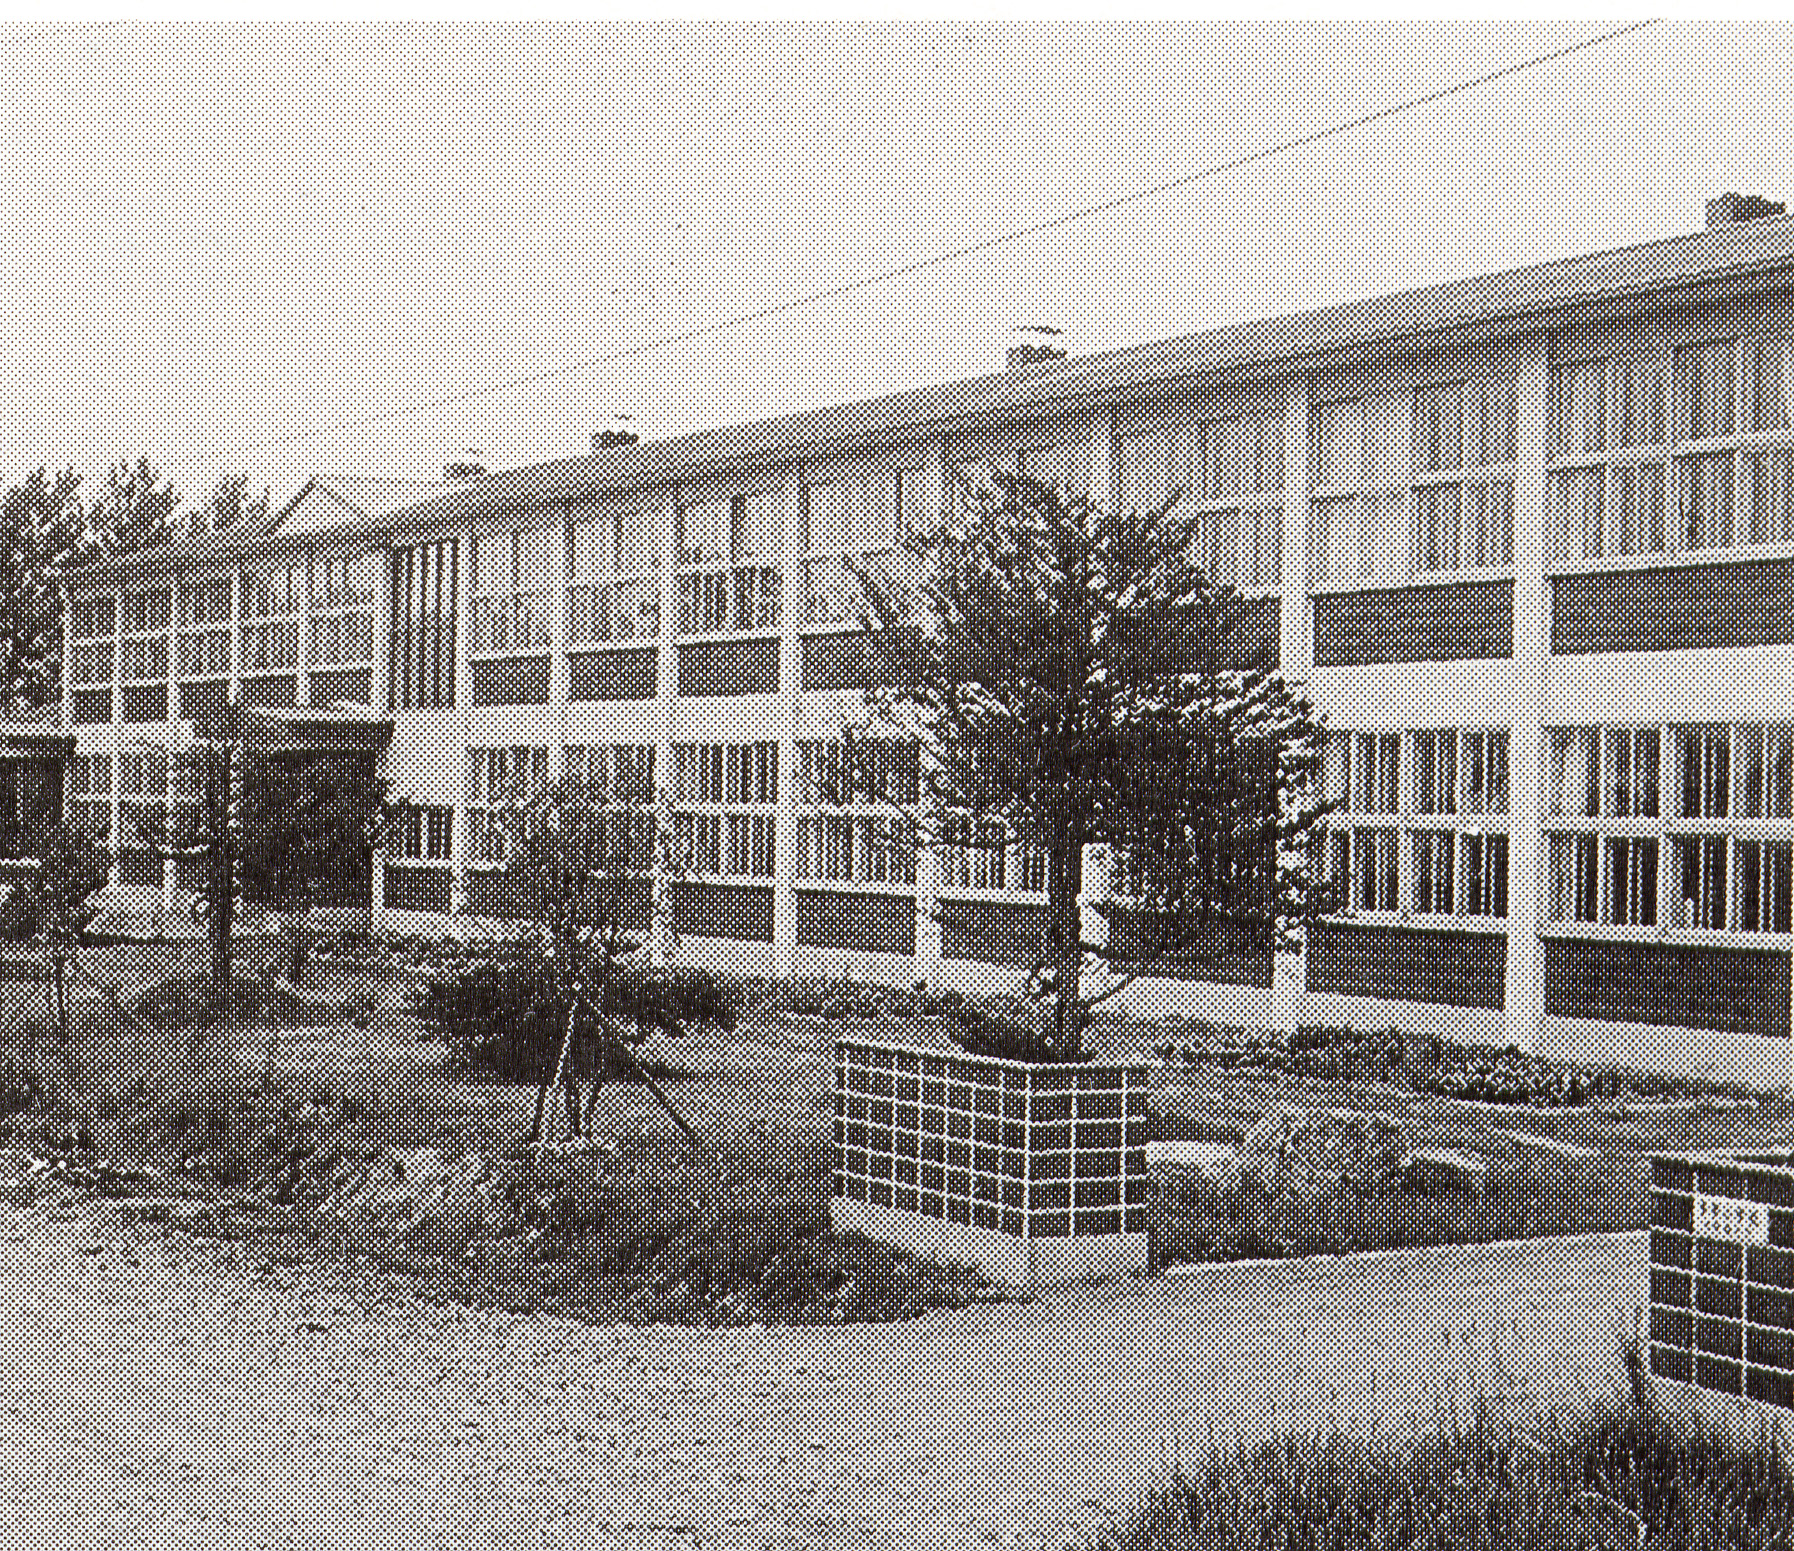 等間隔に木が植えられた手前に門柱、奥に建つ2階建ての昭和45年頃の多寄小学校の校舎の白黒写真